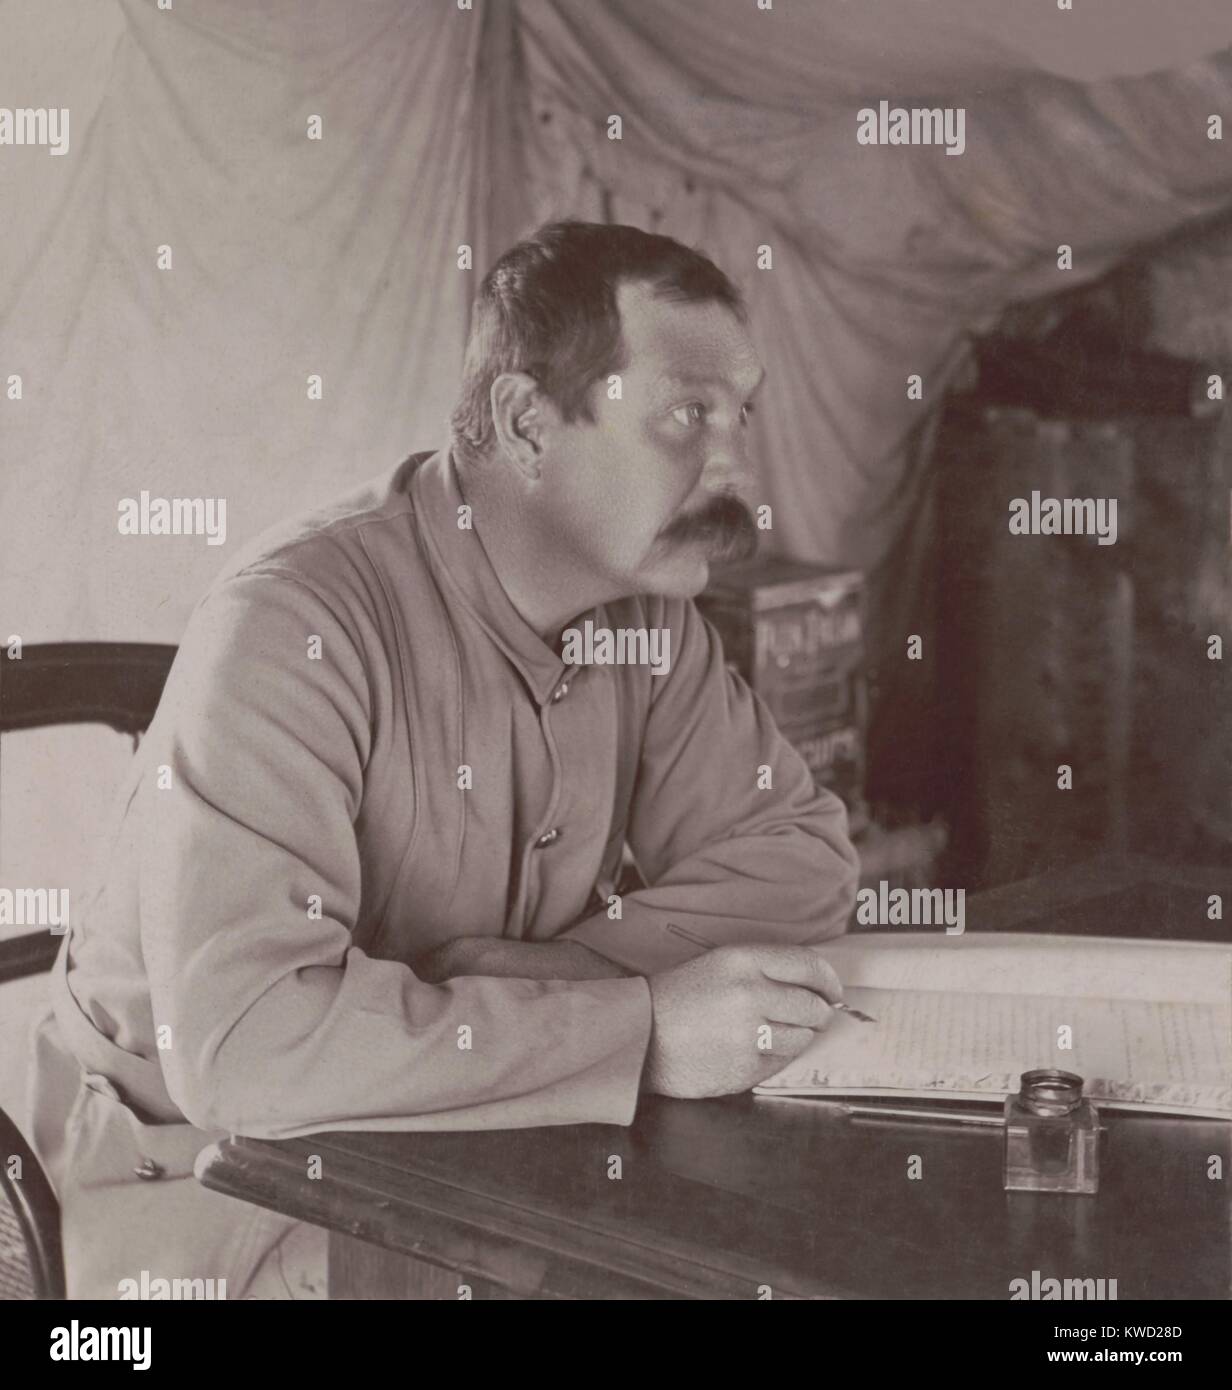 Autore britannico Conan Doyle nella sua tenda a Bloemfontein, in Sud Africa nel 1900. Egli stava scrivendo la grande guerra boera, pubblicato nel 1900. Ha pubblicato il suo libro dopo la riuscita offensiva britannica del gen.-sett. 1900. Infatti, insurrezione boera ha continuato fino a maggio 1902 (BSLOC 2017 20 43) Foto Stock